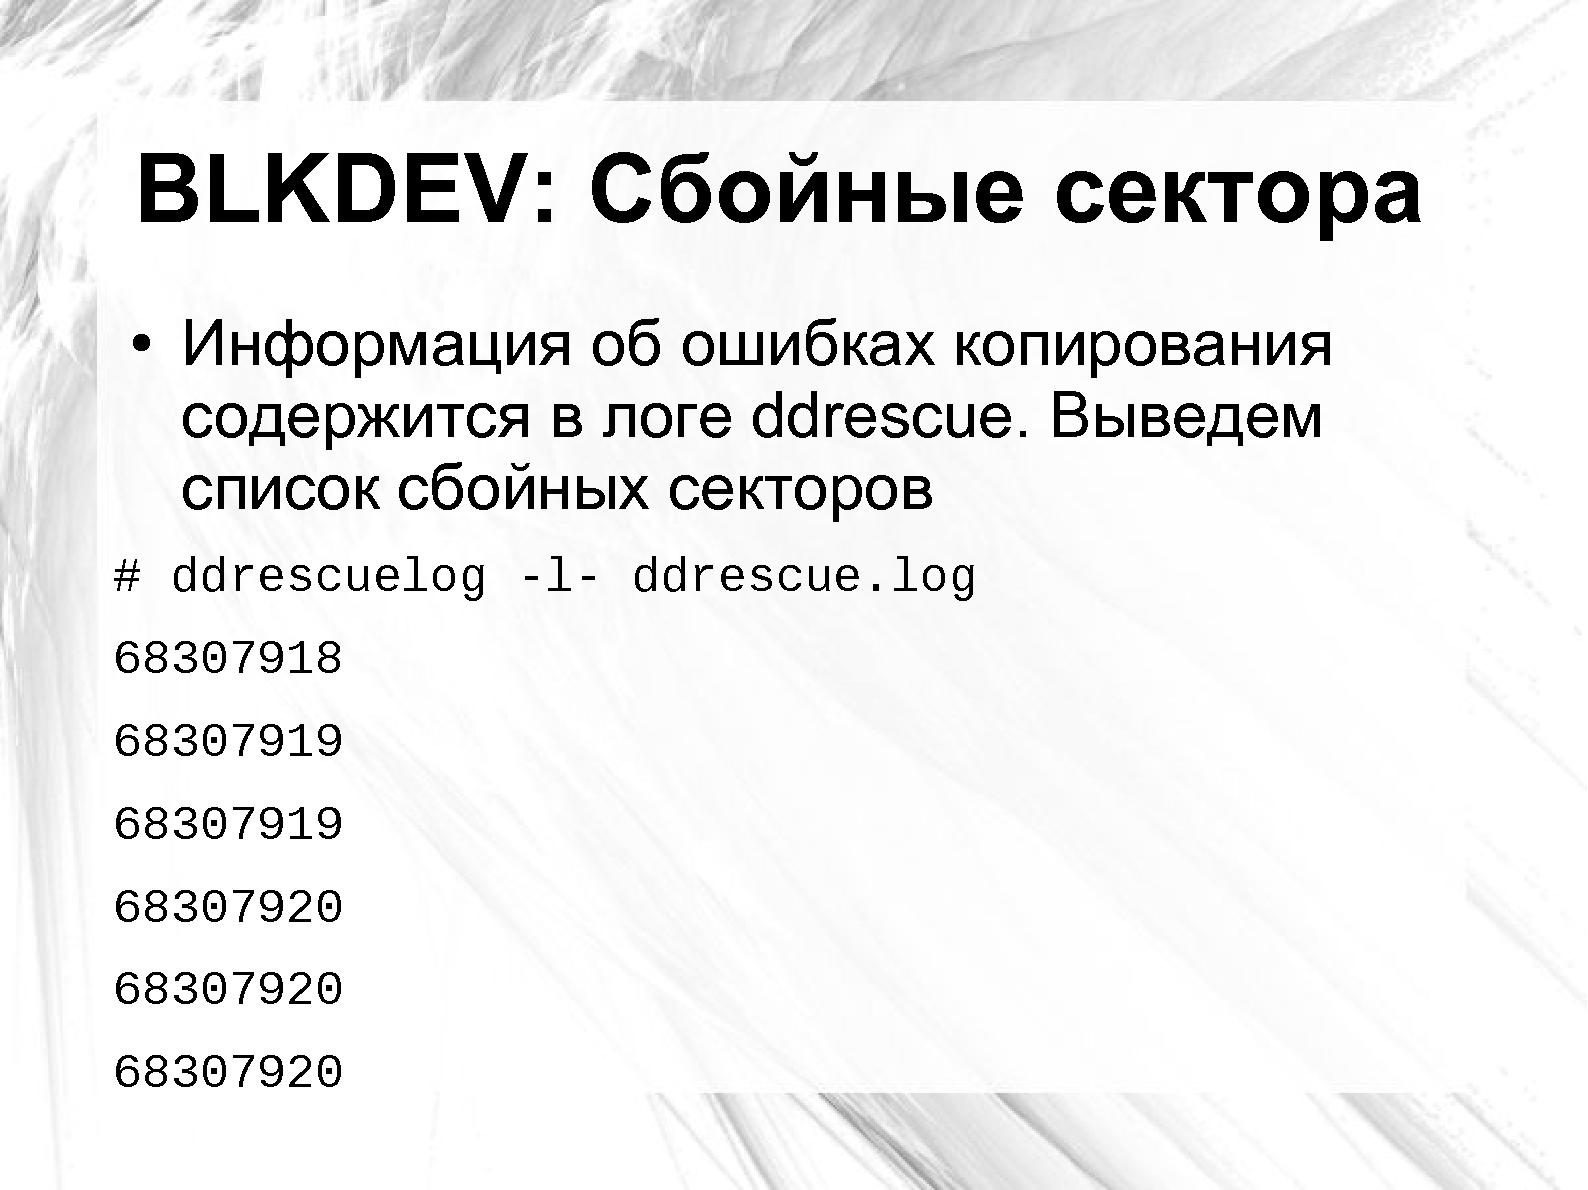 Файл:Оценка повреждения данных на сбойном носителе применительно к Ext3 и NTFS (Андрей Татаранович, LVEE-2014).pdf